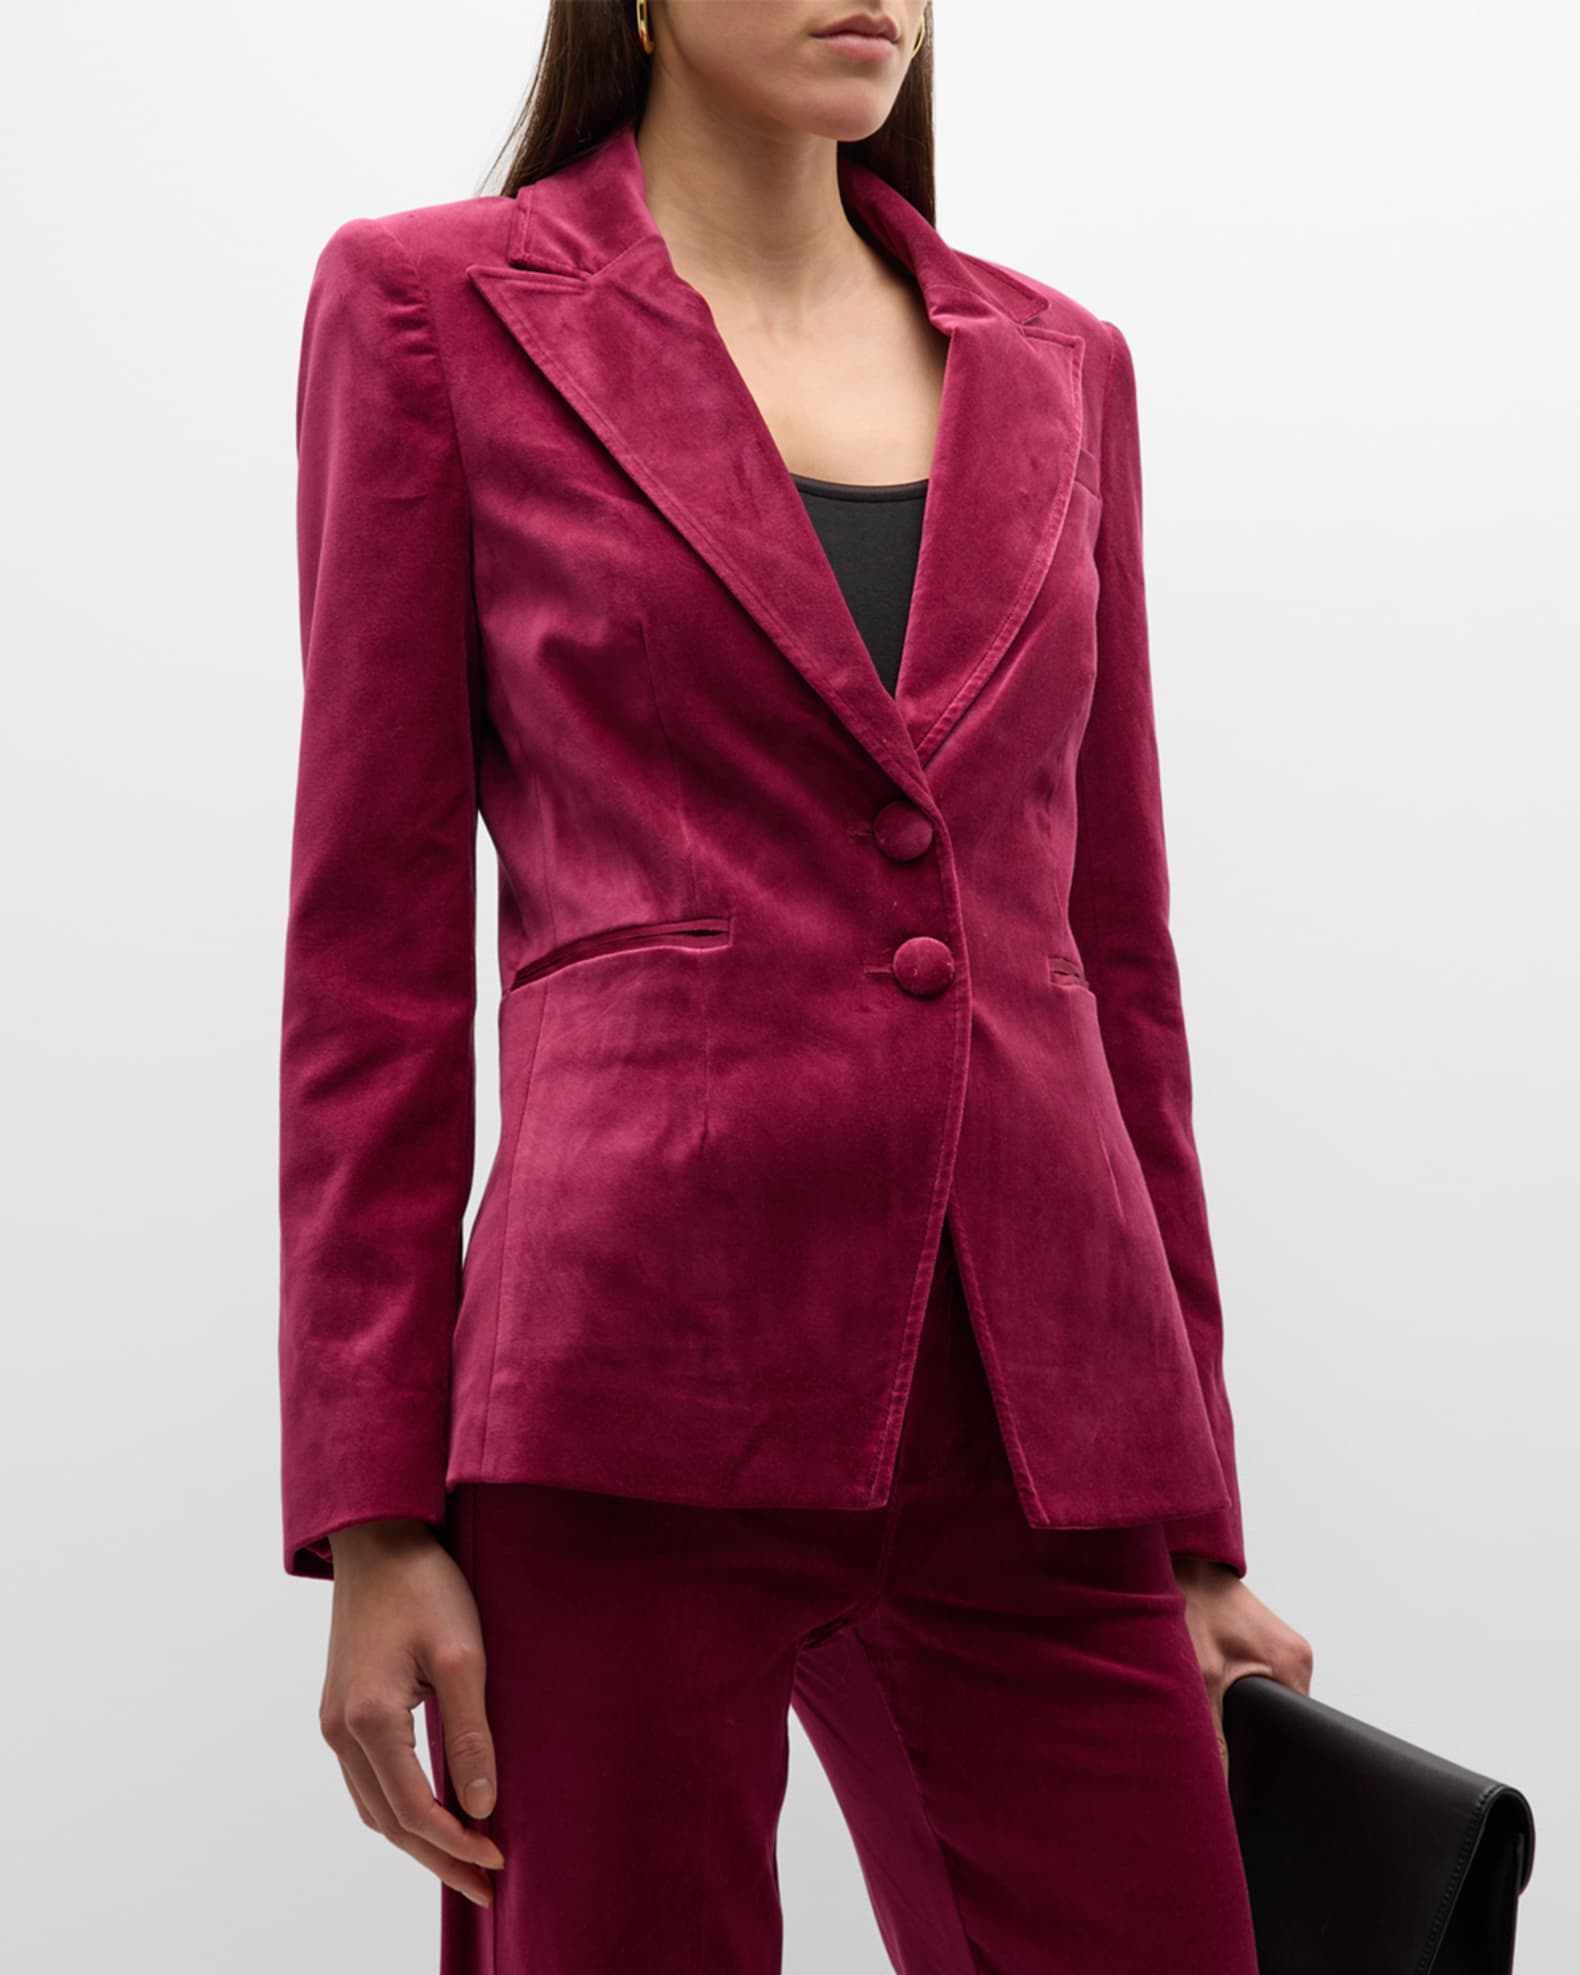 Louis Vuitton Suits & Blazers for Men - Poshmark